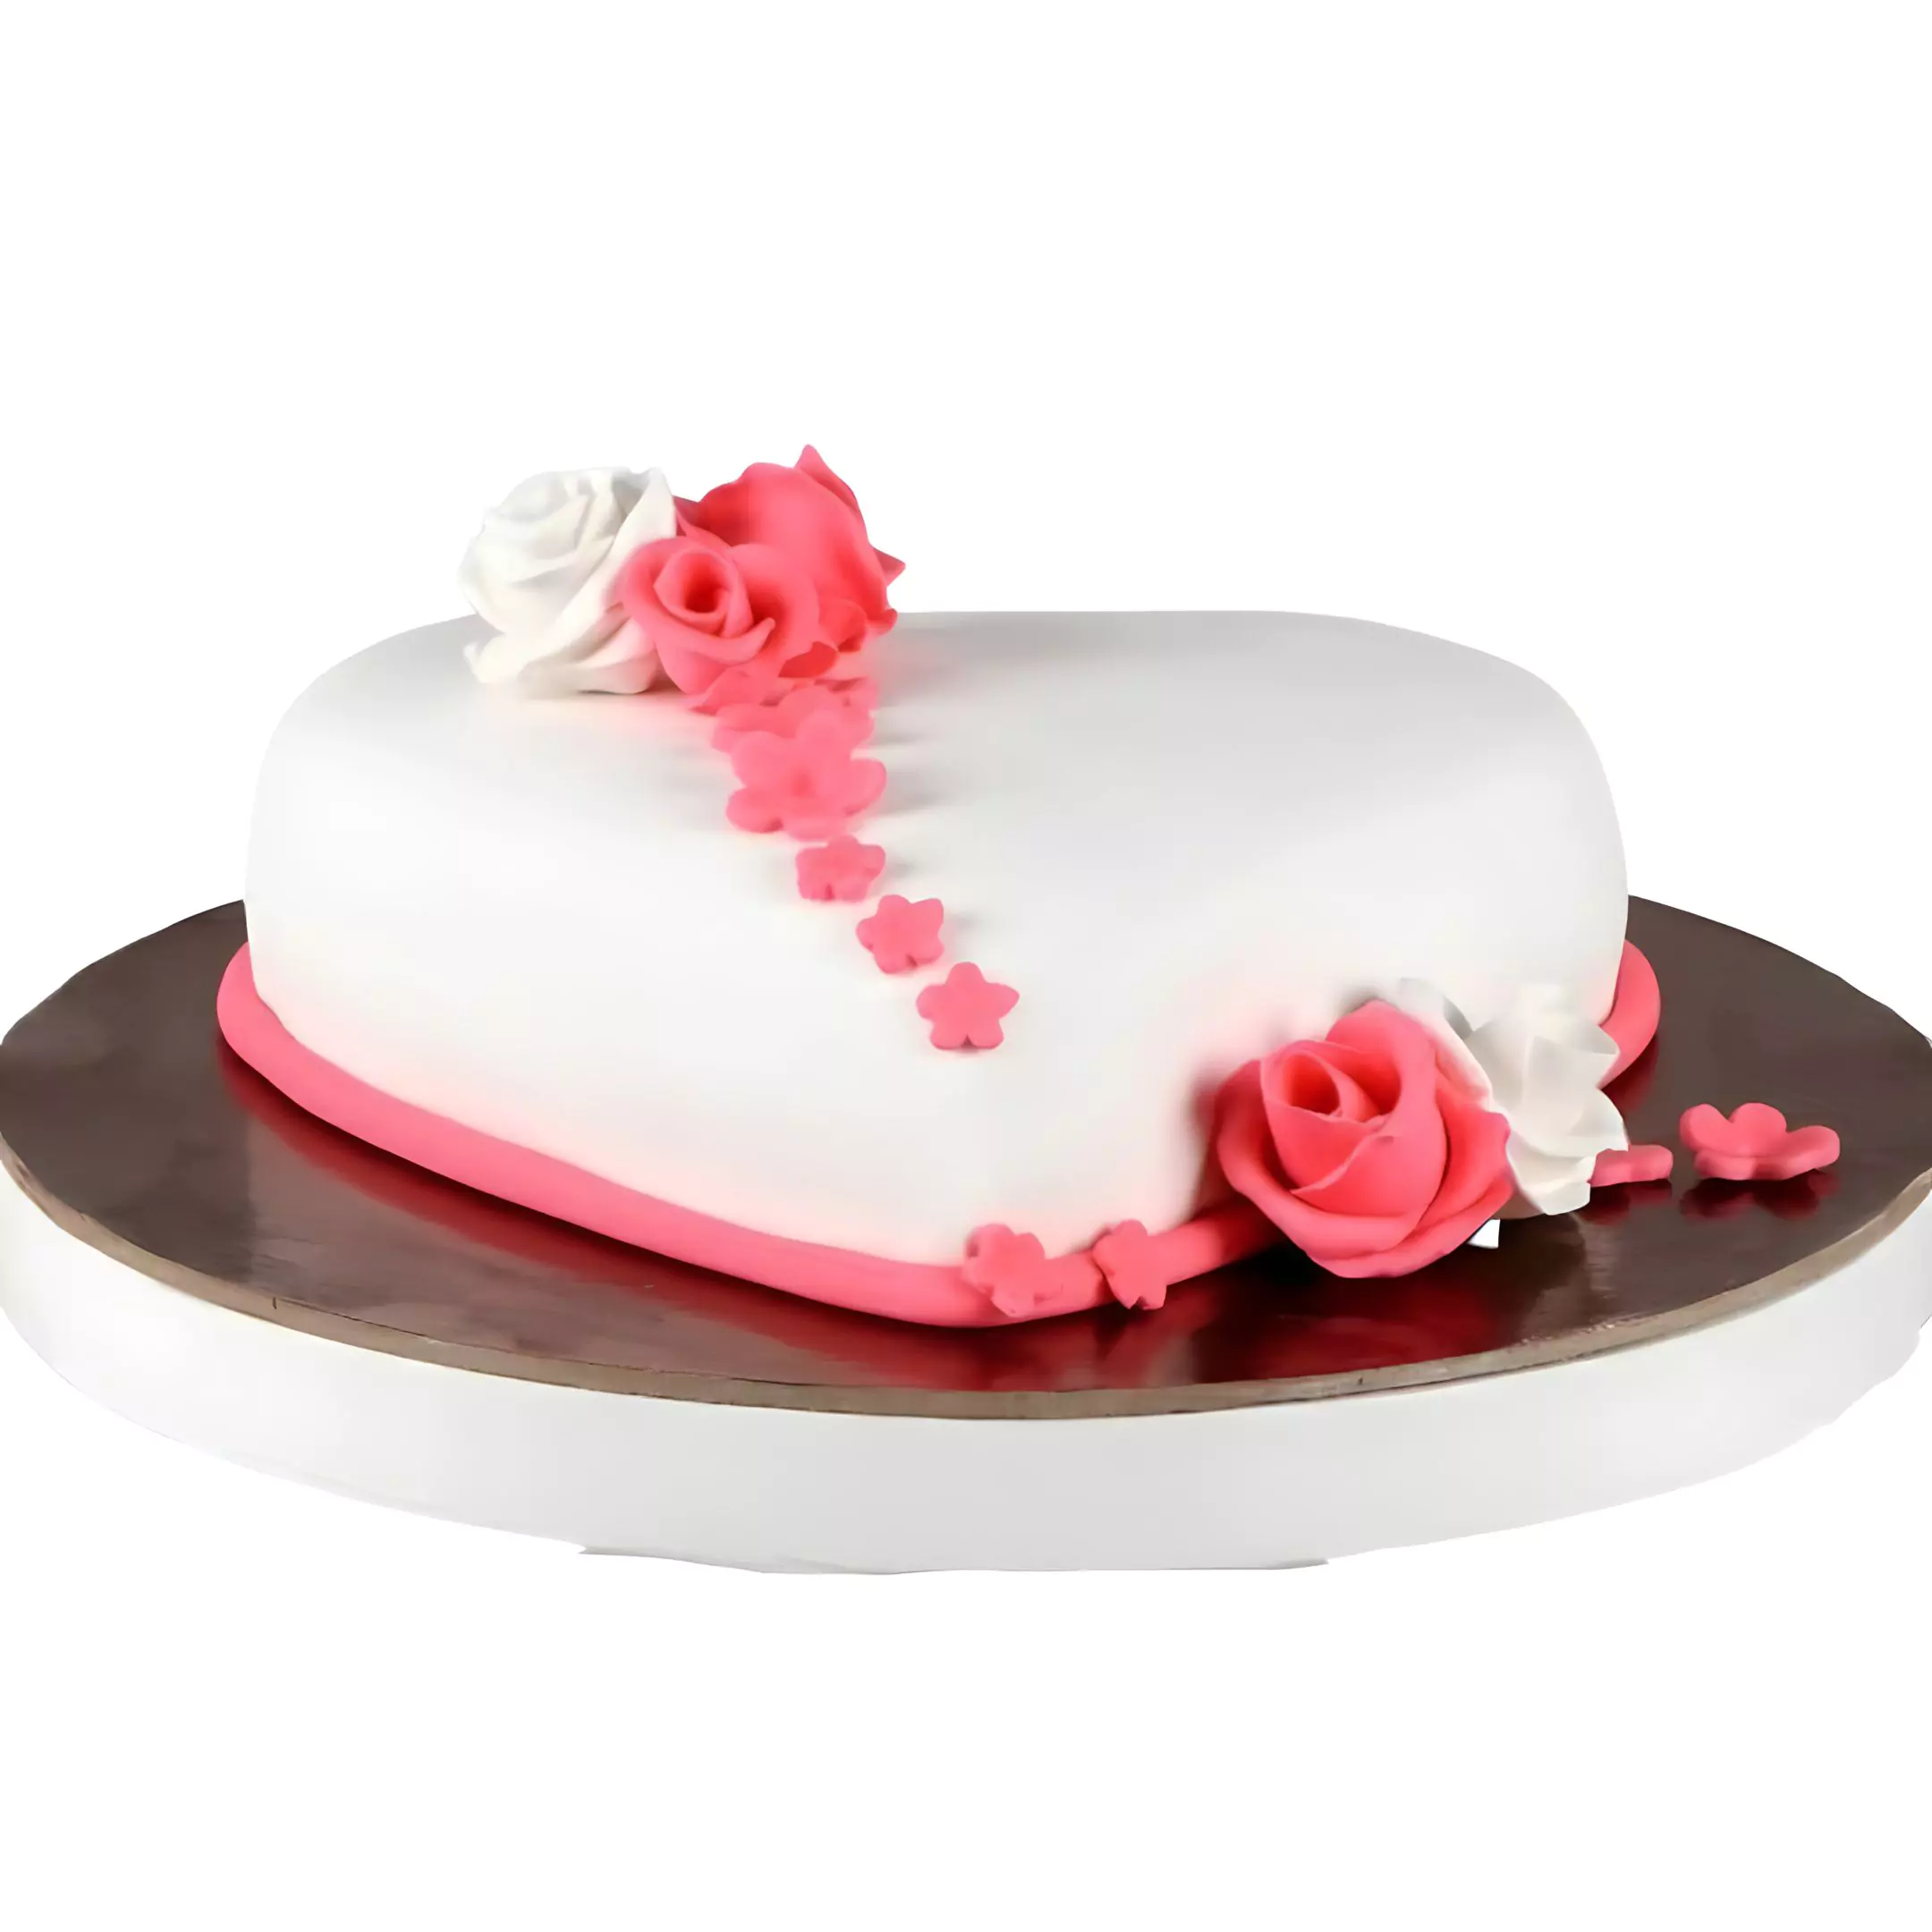 Special Hearts Truffle Fondant Cake